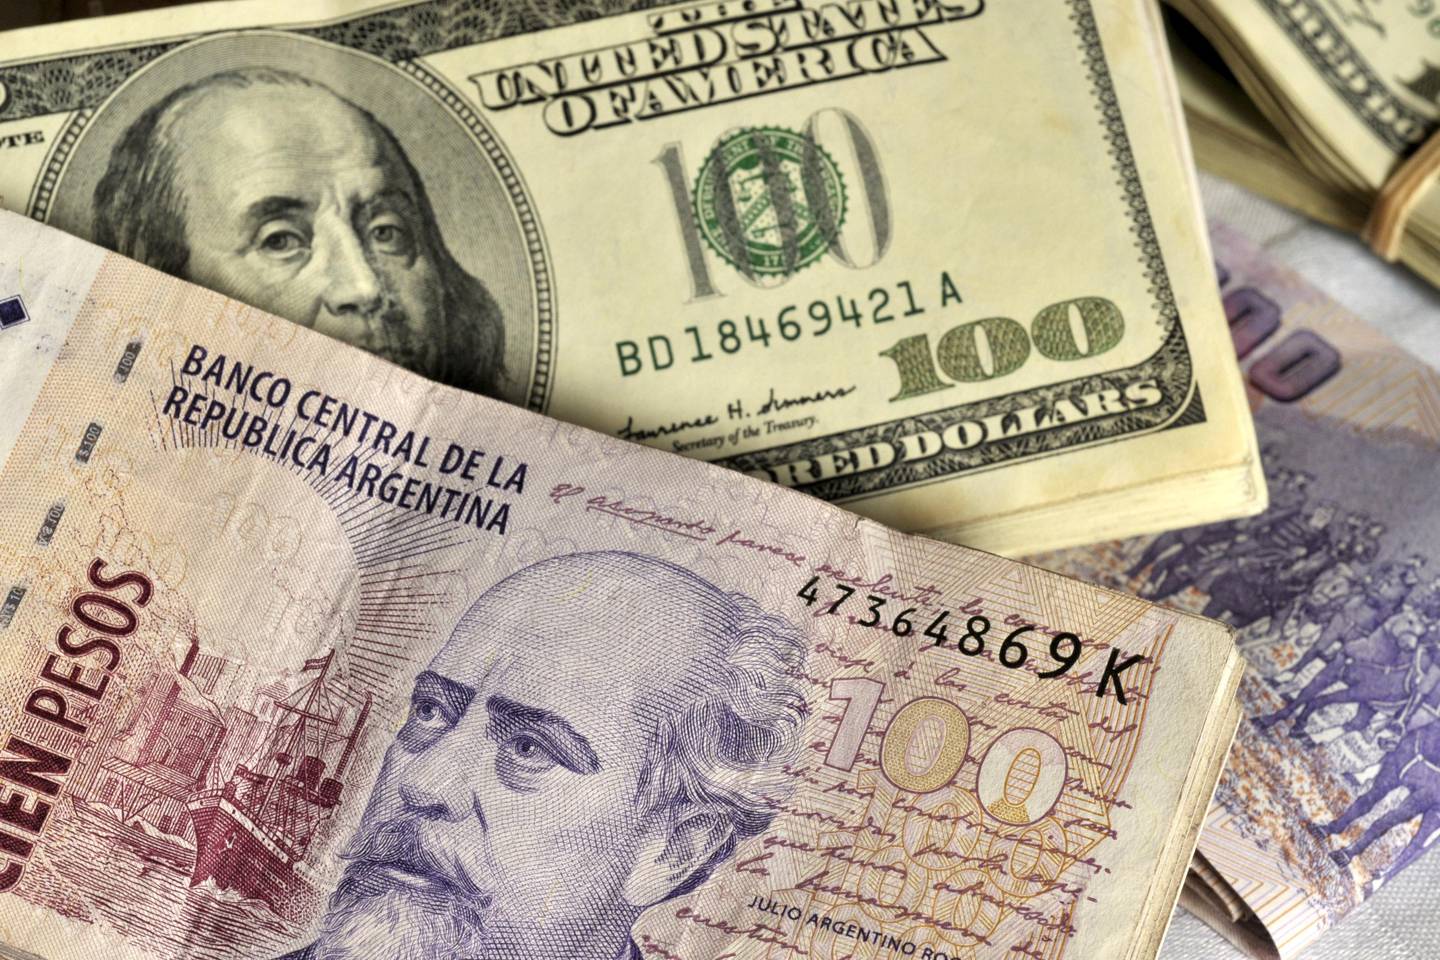 Fajos de billetes de 100 pesos argentinos y billetes de US$100.Fotógrafo: Diego Giudice/Bloombergdfd